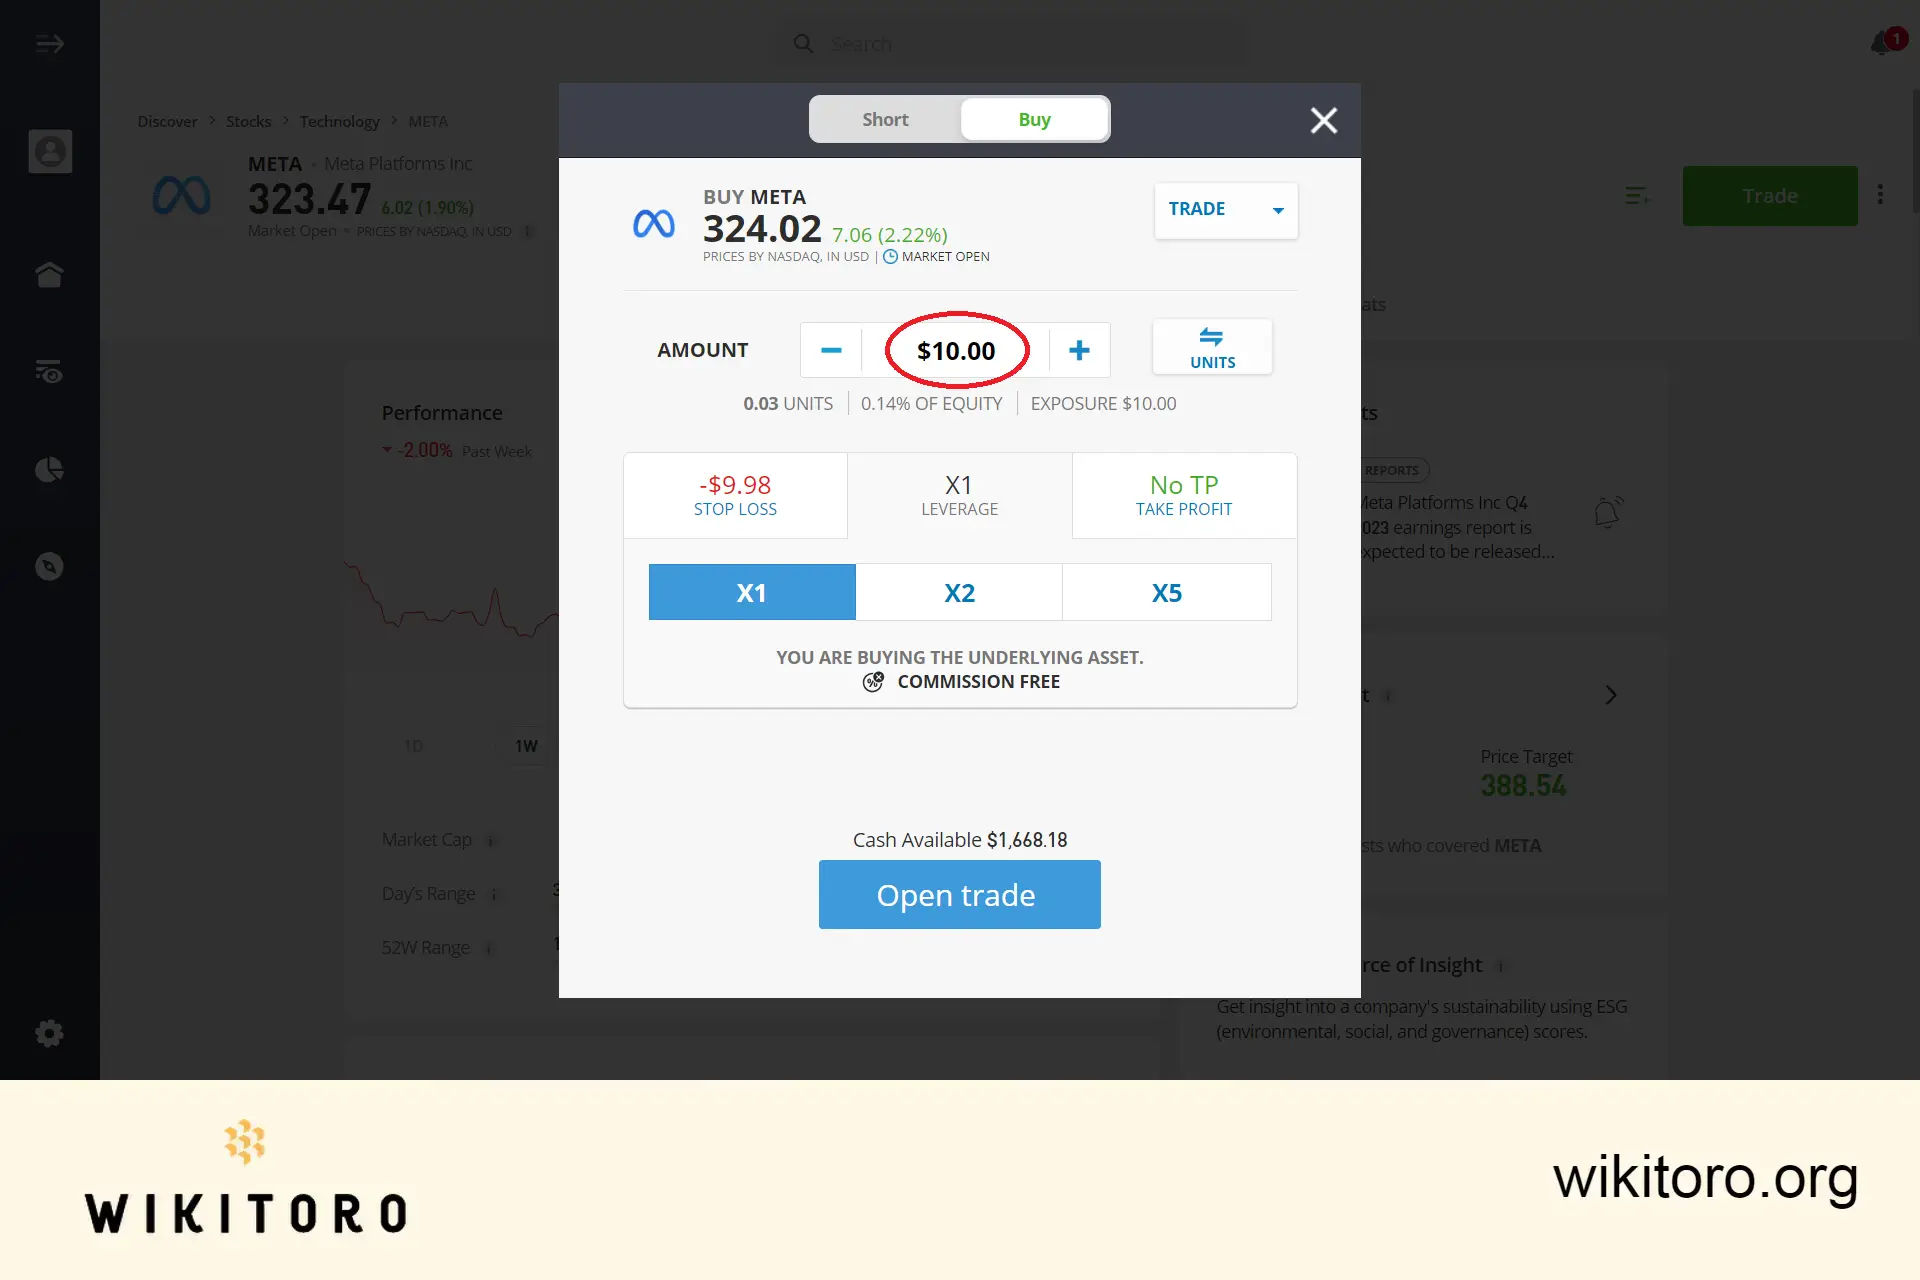 Buying Meta stocks on eToro